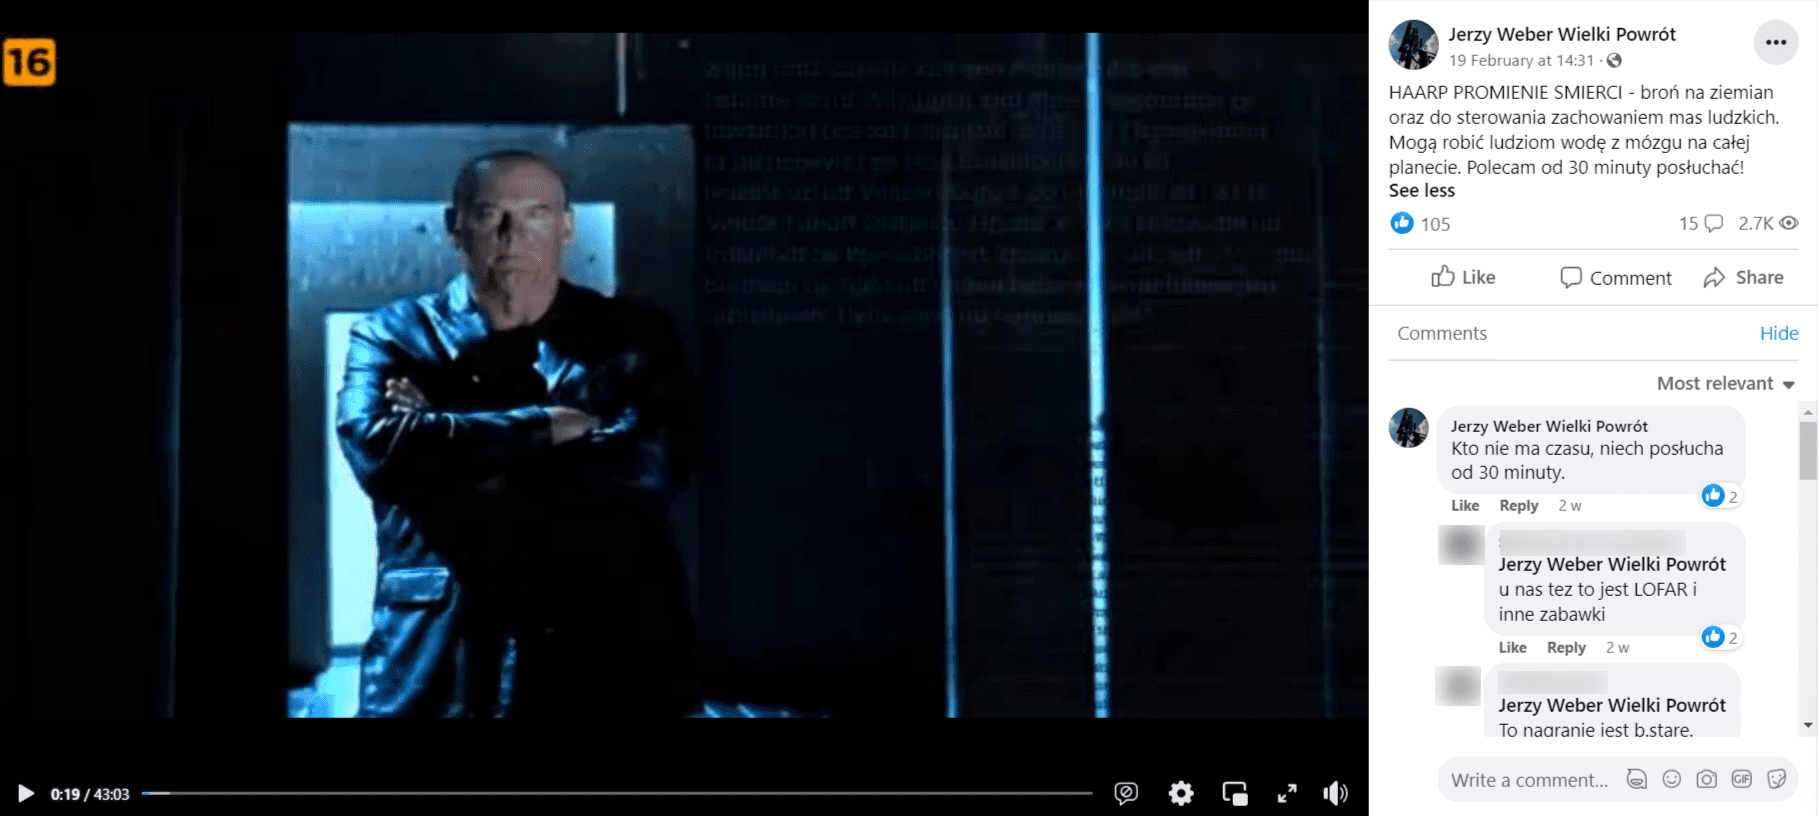 Zrzut ekranu z posta na Facebooku. Na zdjęciu Jesse Ventura stojący w ciemnym pomieszczeniu. W opisie informacja, że HAARP to broń do sterowania ludźmi.